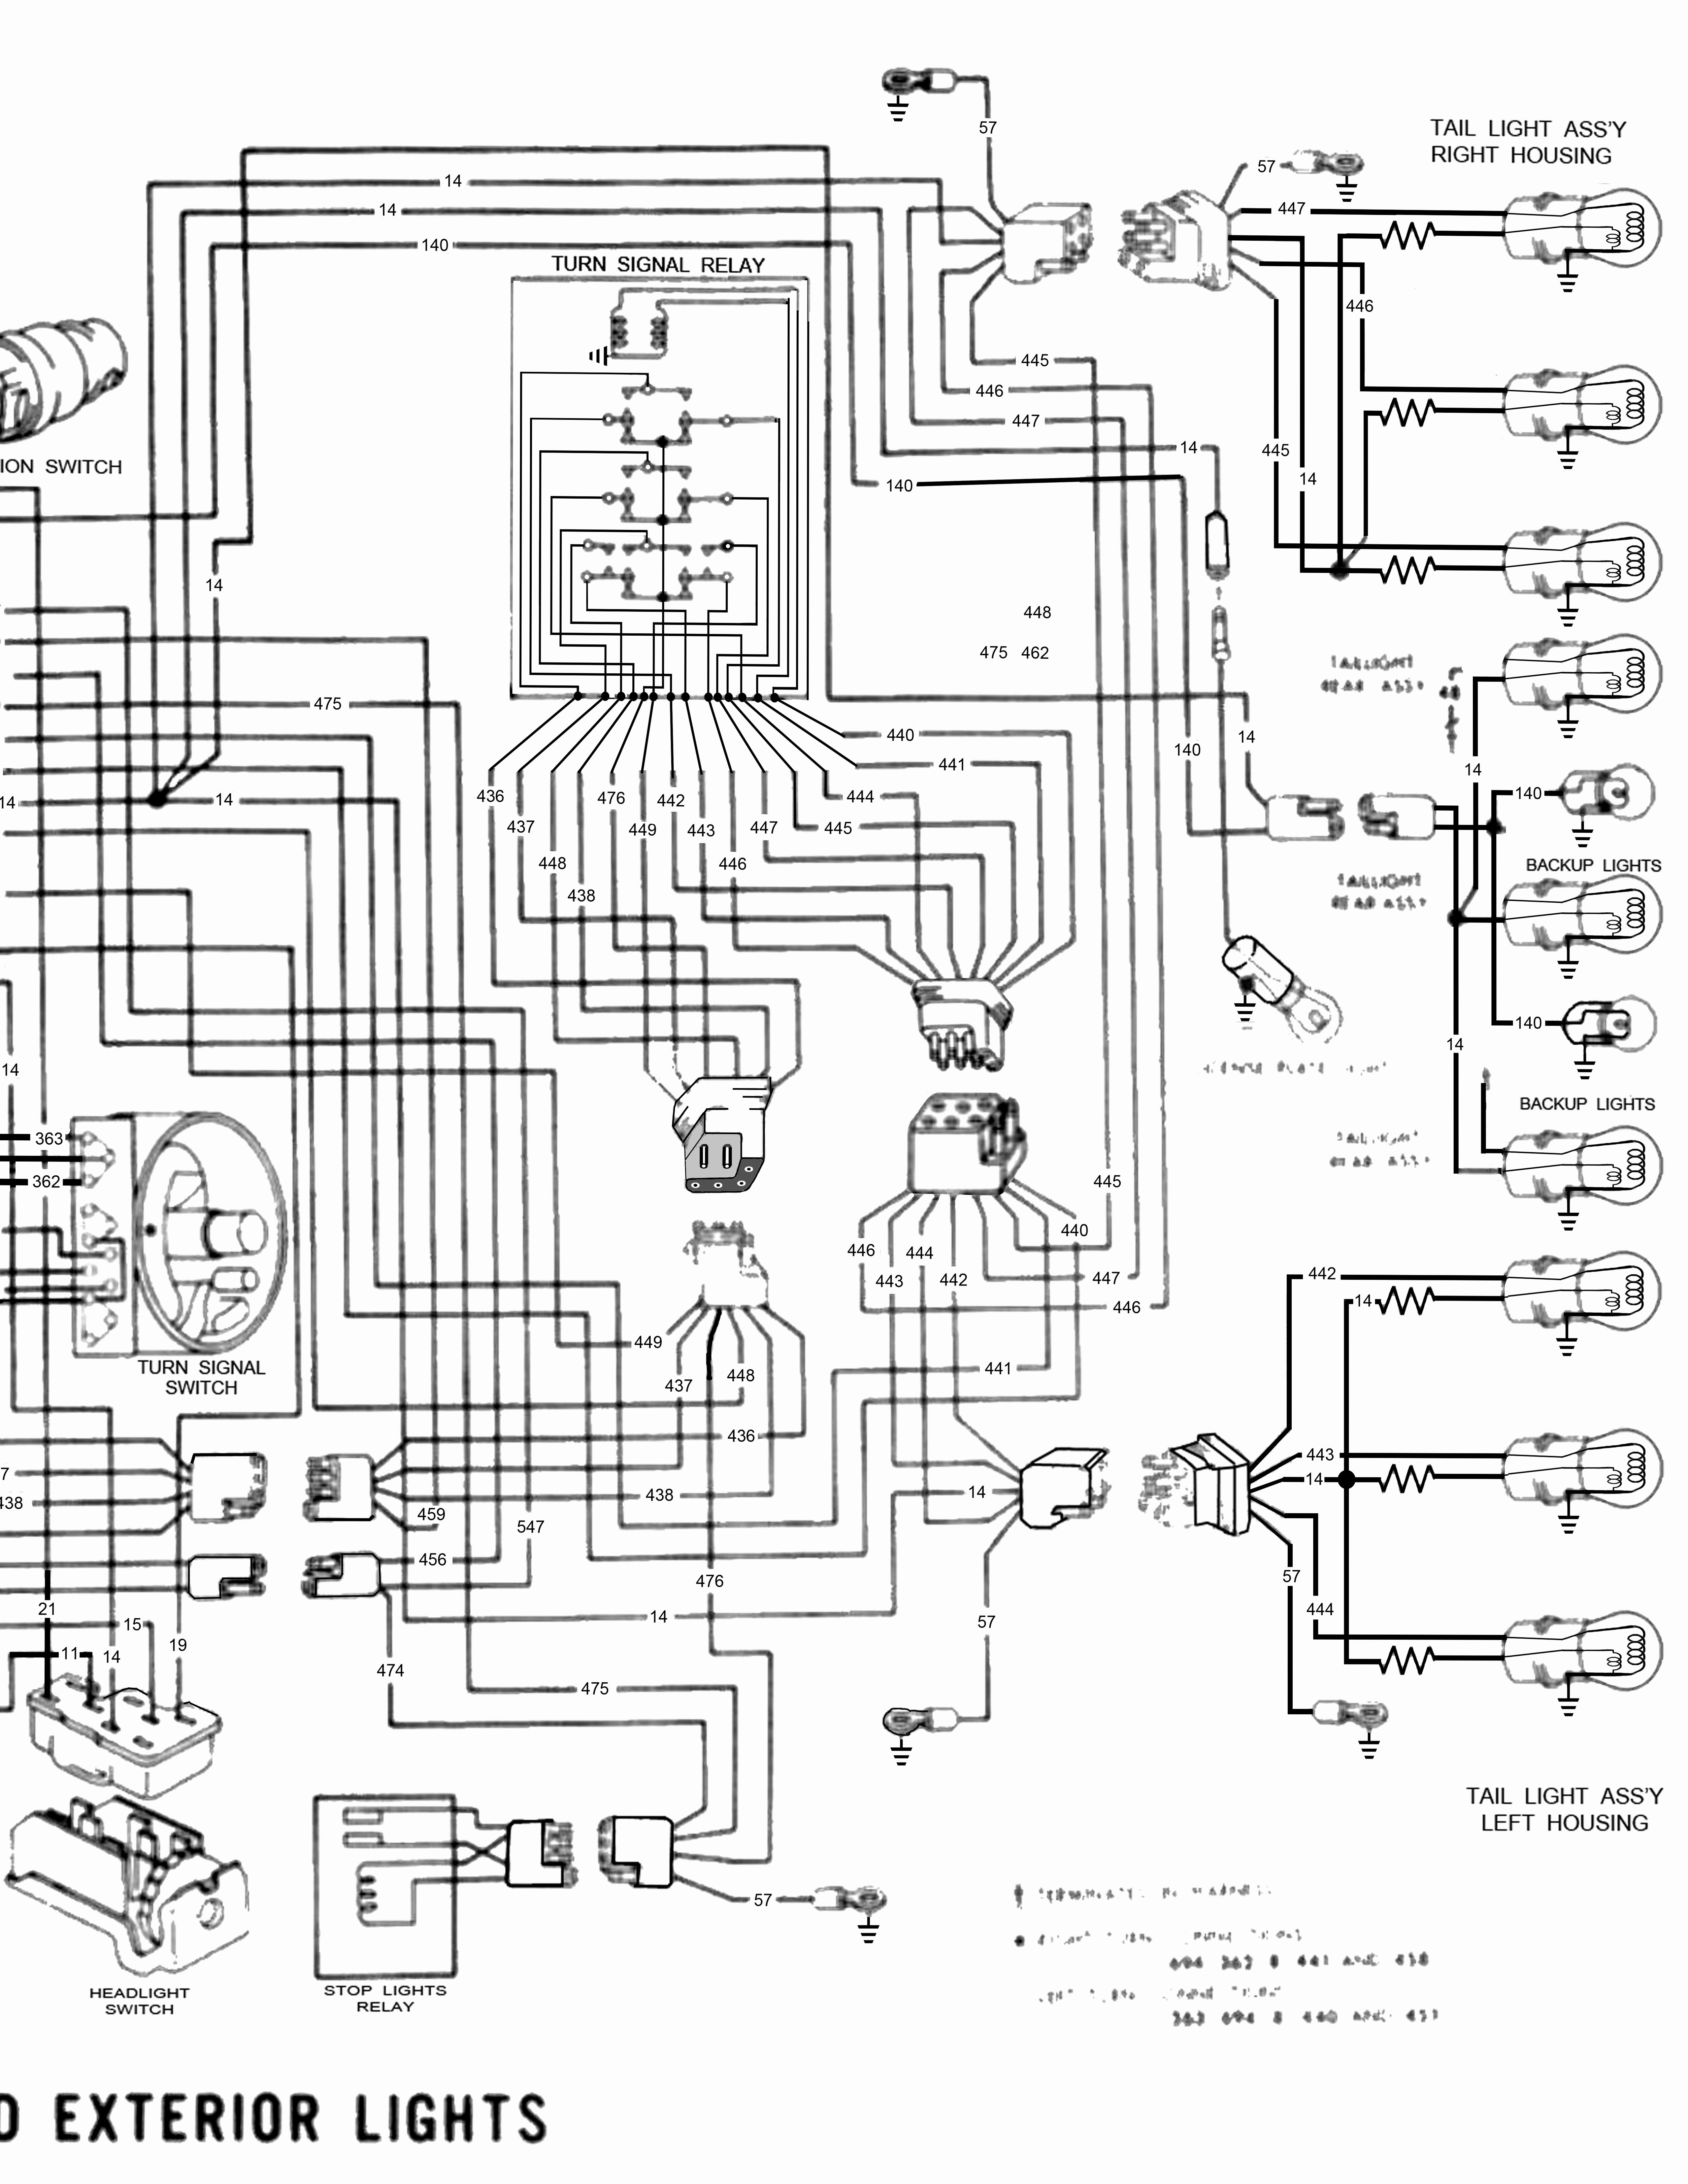 1999 kenworth t800 wiring diagram images wire center u2022 rh valmedwire co